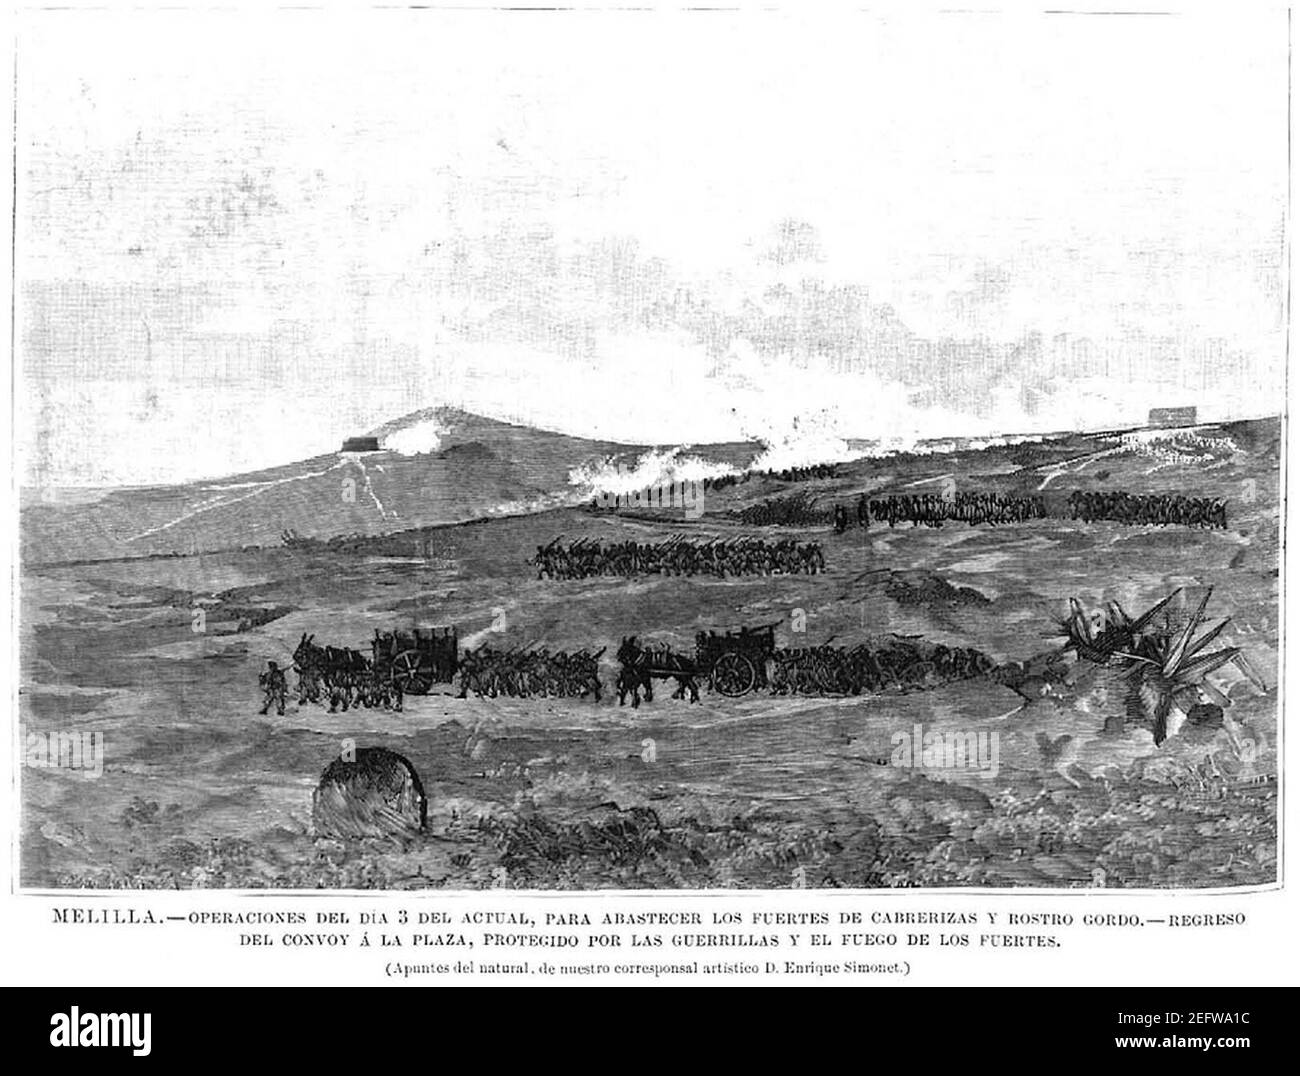 Operaciones del 3 de noviembre de 1893 para abastecer los fuertes de Cabrerizas y Rostro Gordo, regreso del convoy a la plaza, protegido por las guerrillas y el fuego de los fuertes. Stock Photo